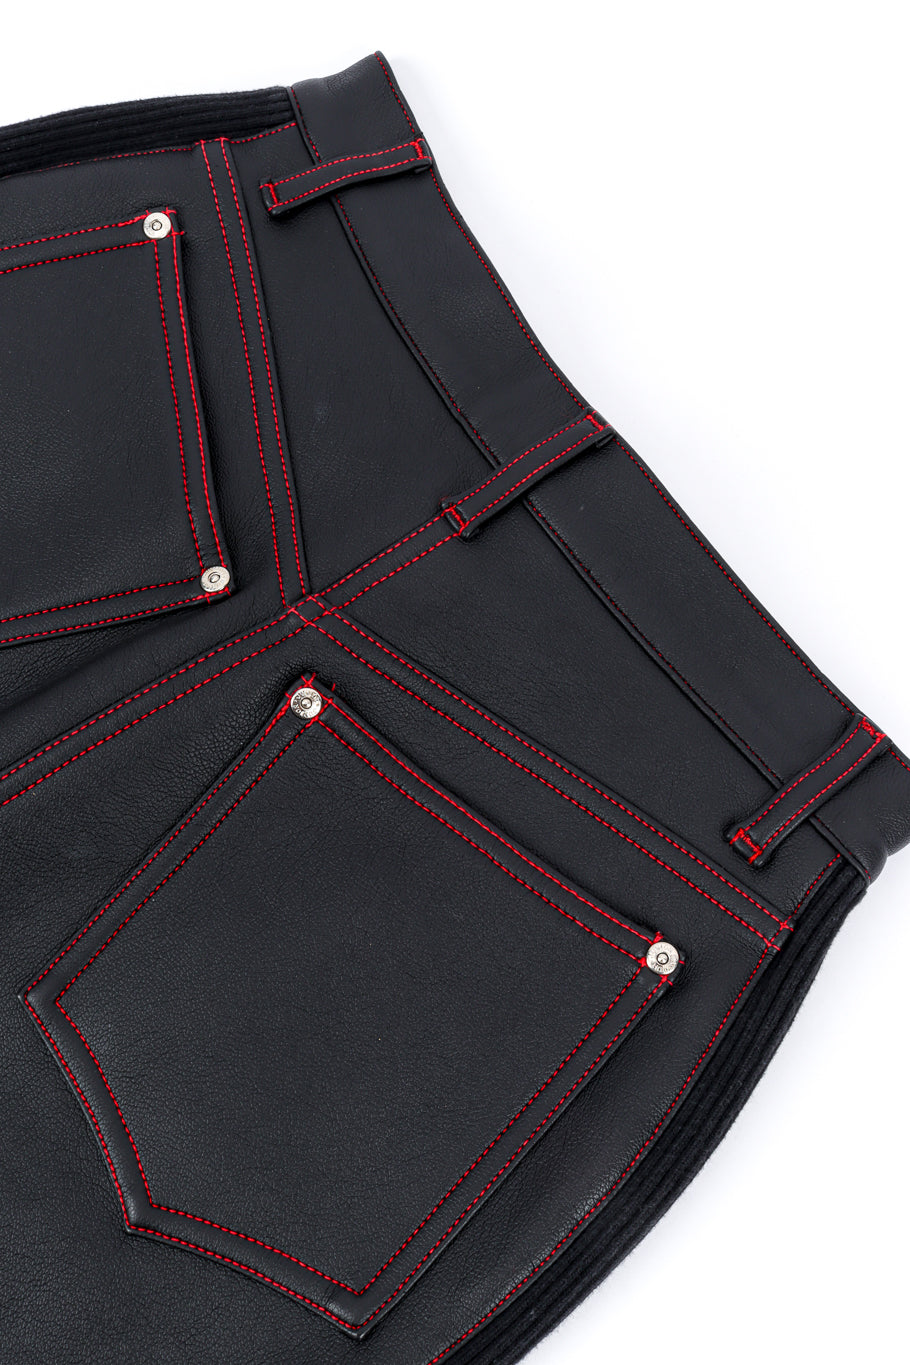 Junior Gaultier Patchwork Faux Leather Skirt back pocket closeup @recess la